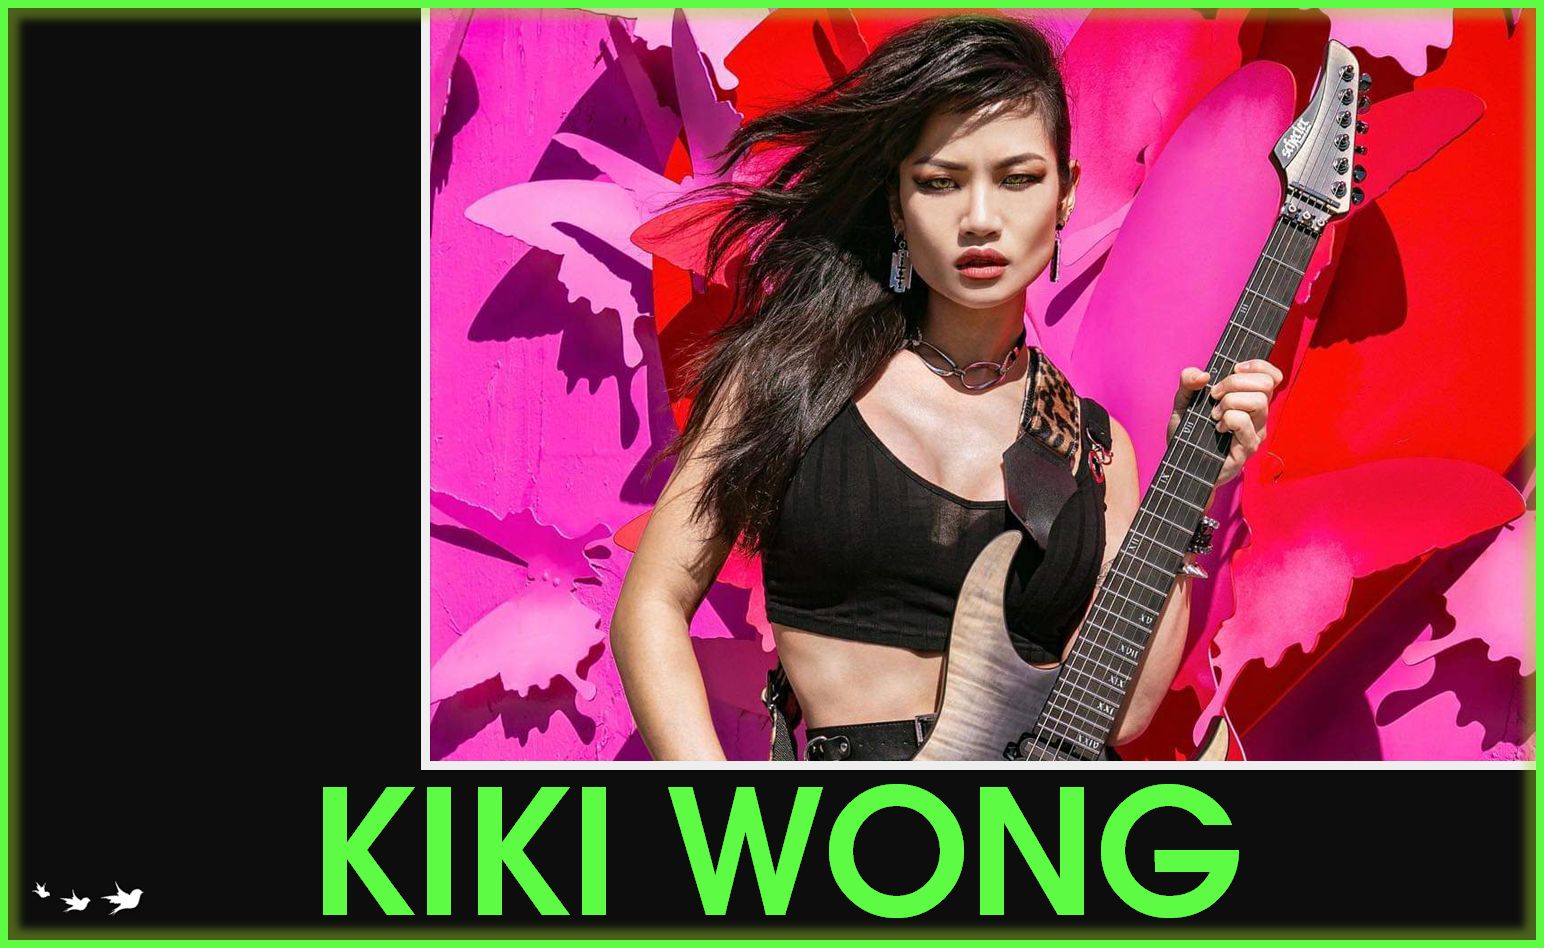 Kiki Wong guitar rocker muay thai model wongo